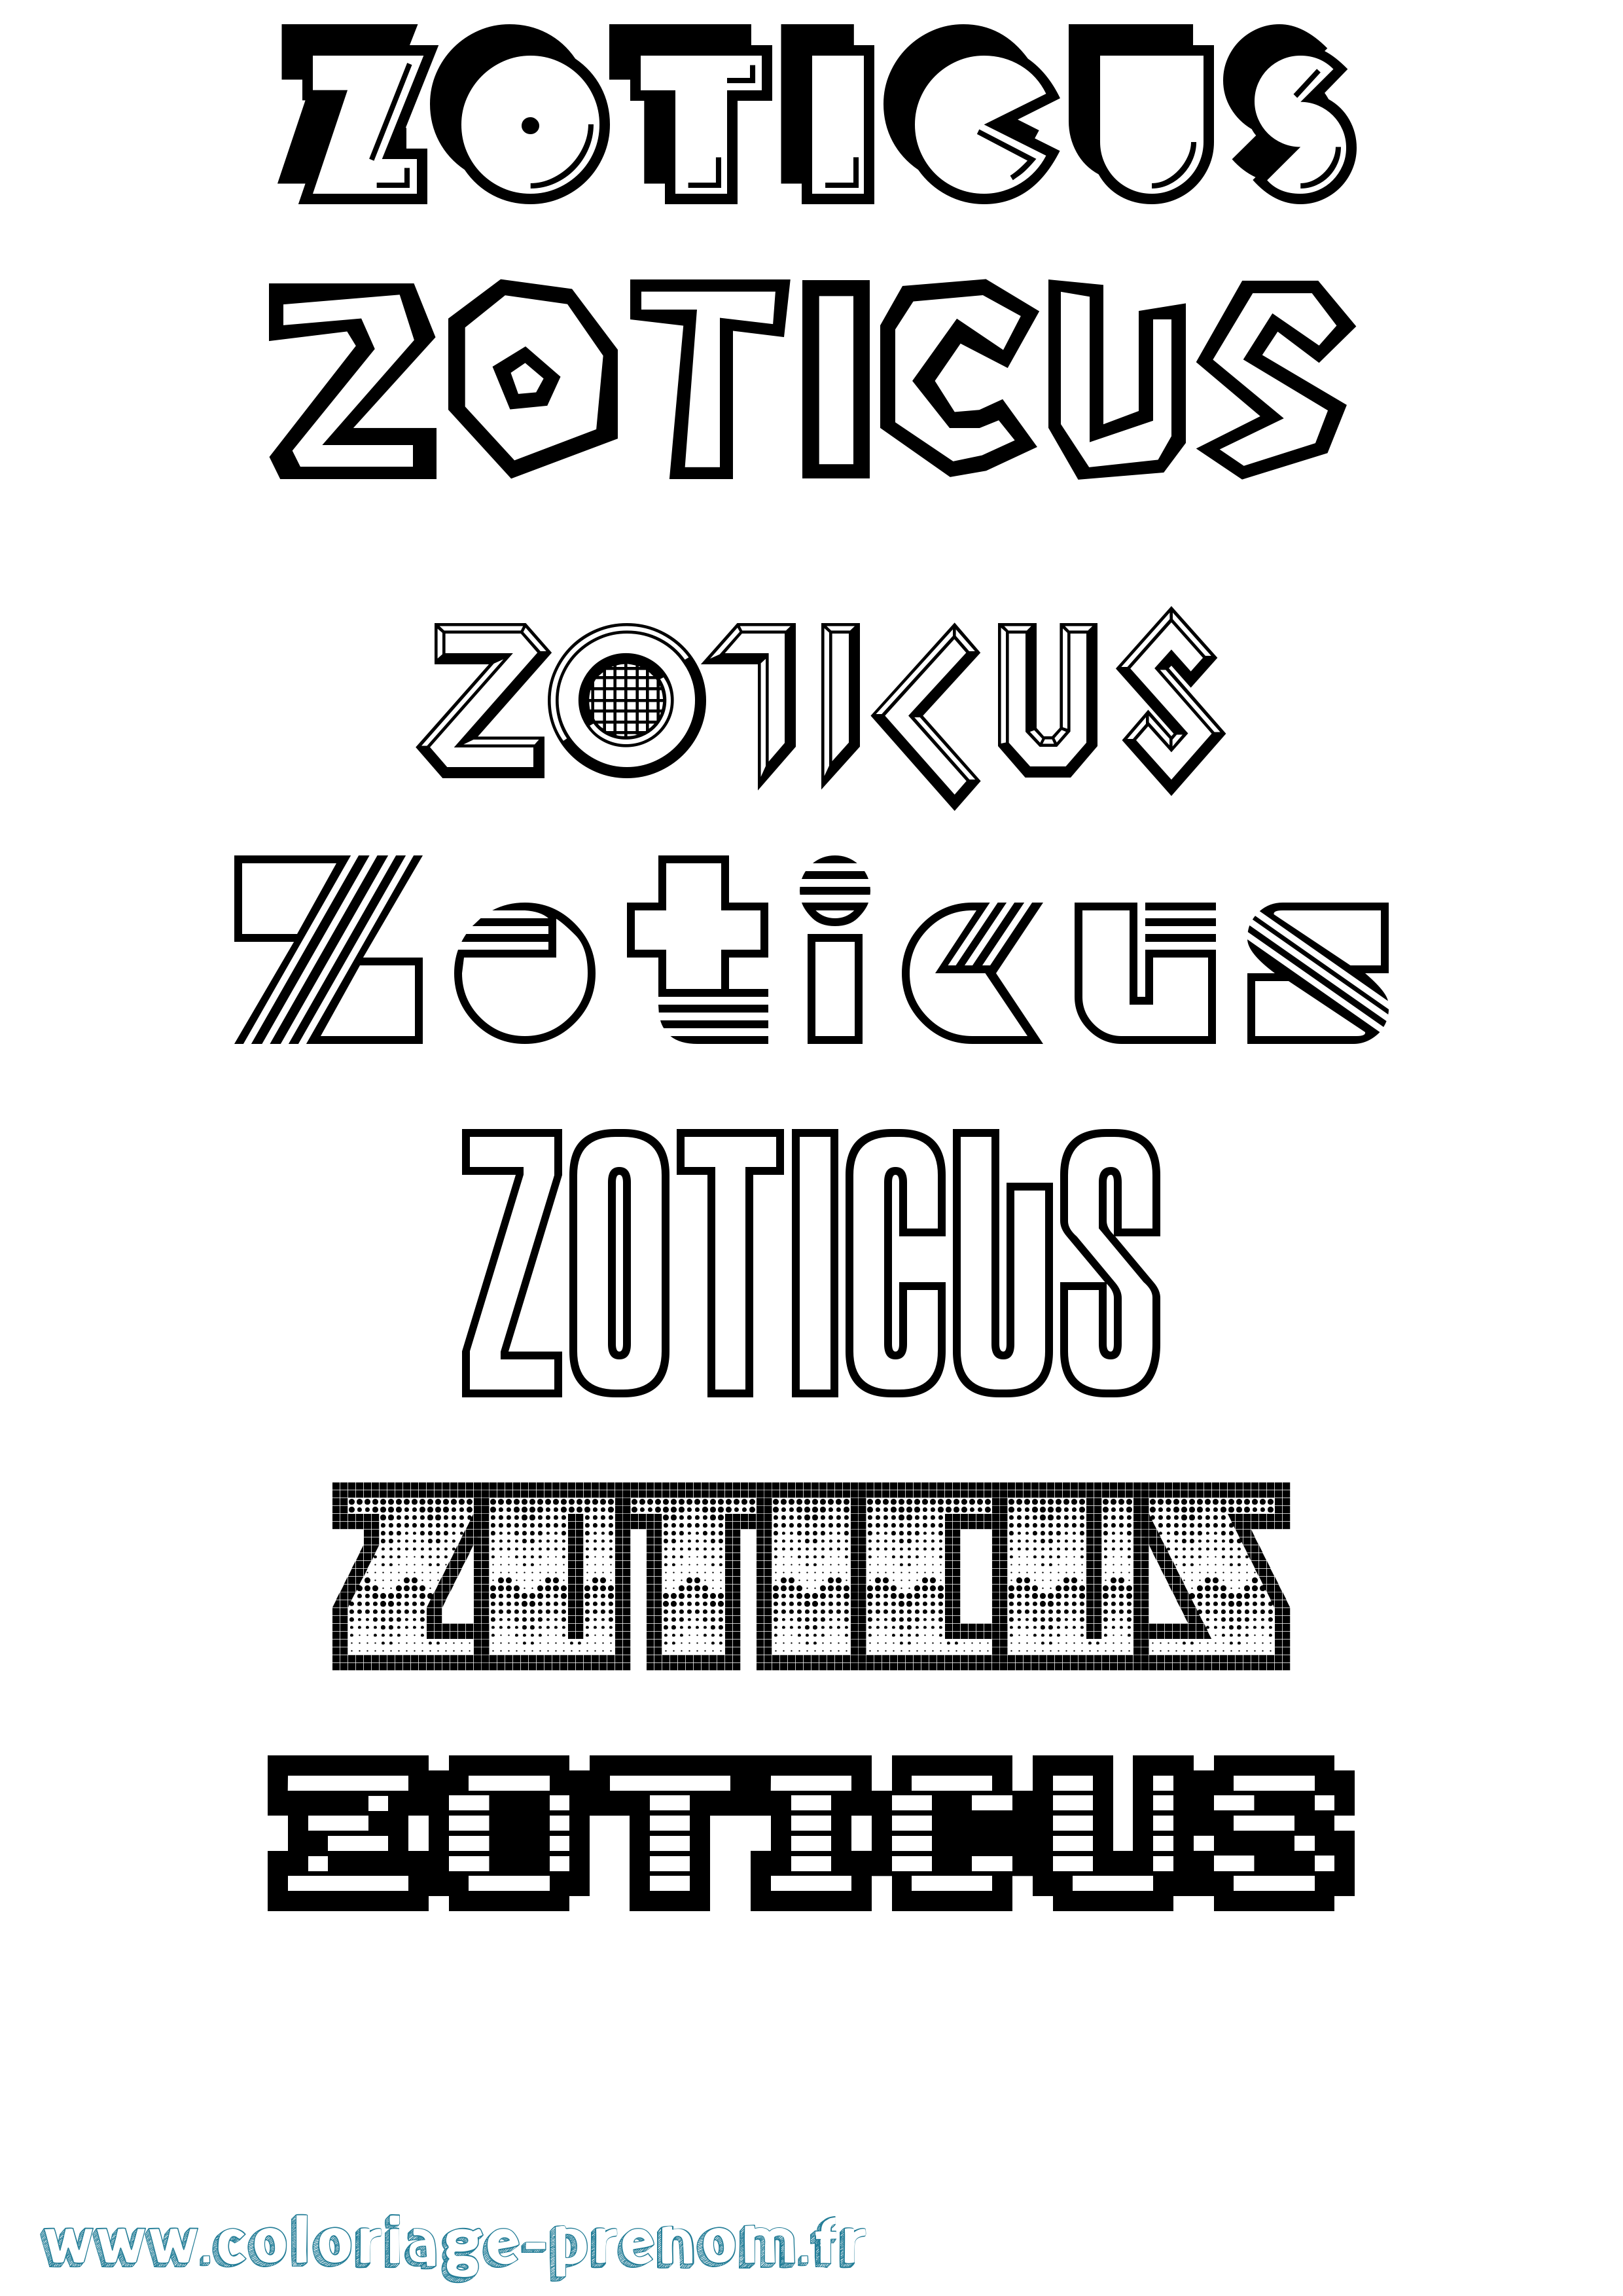 Coloriage prénom Zoticus Jeux Vidéos